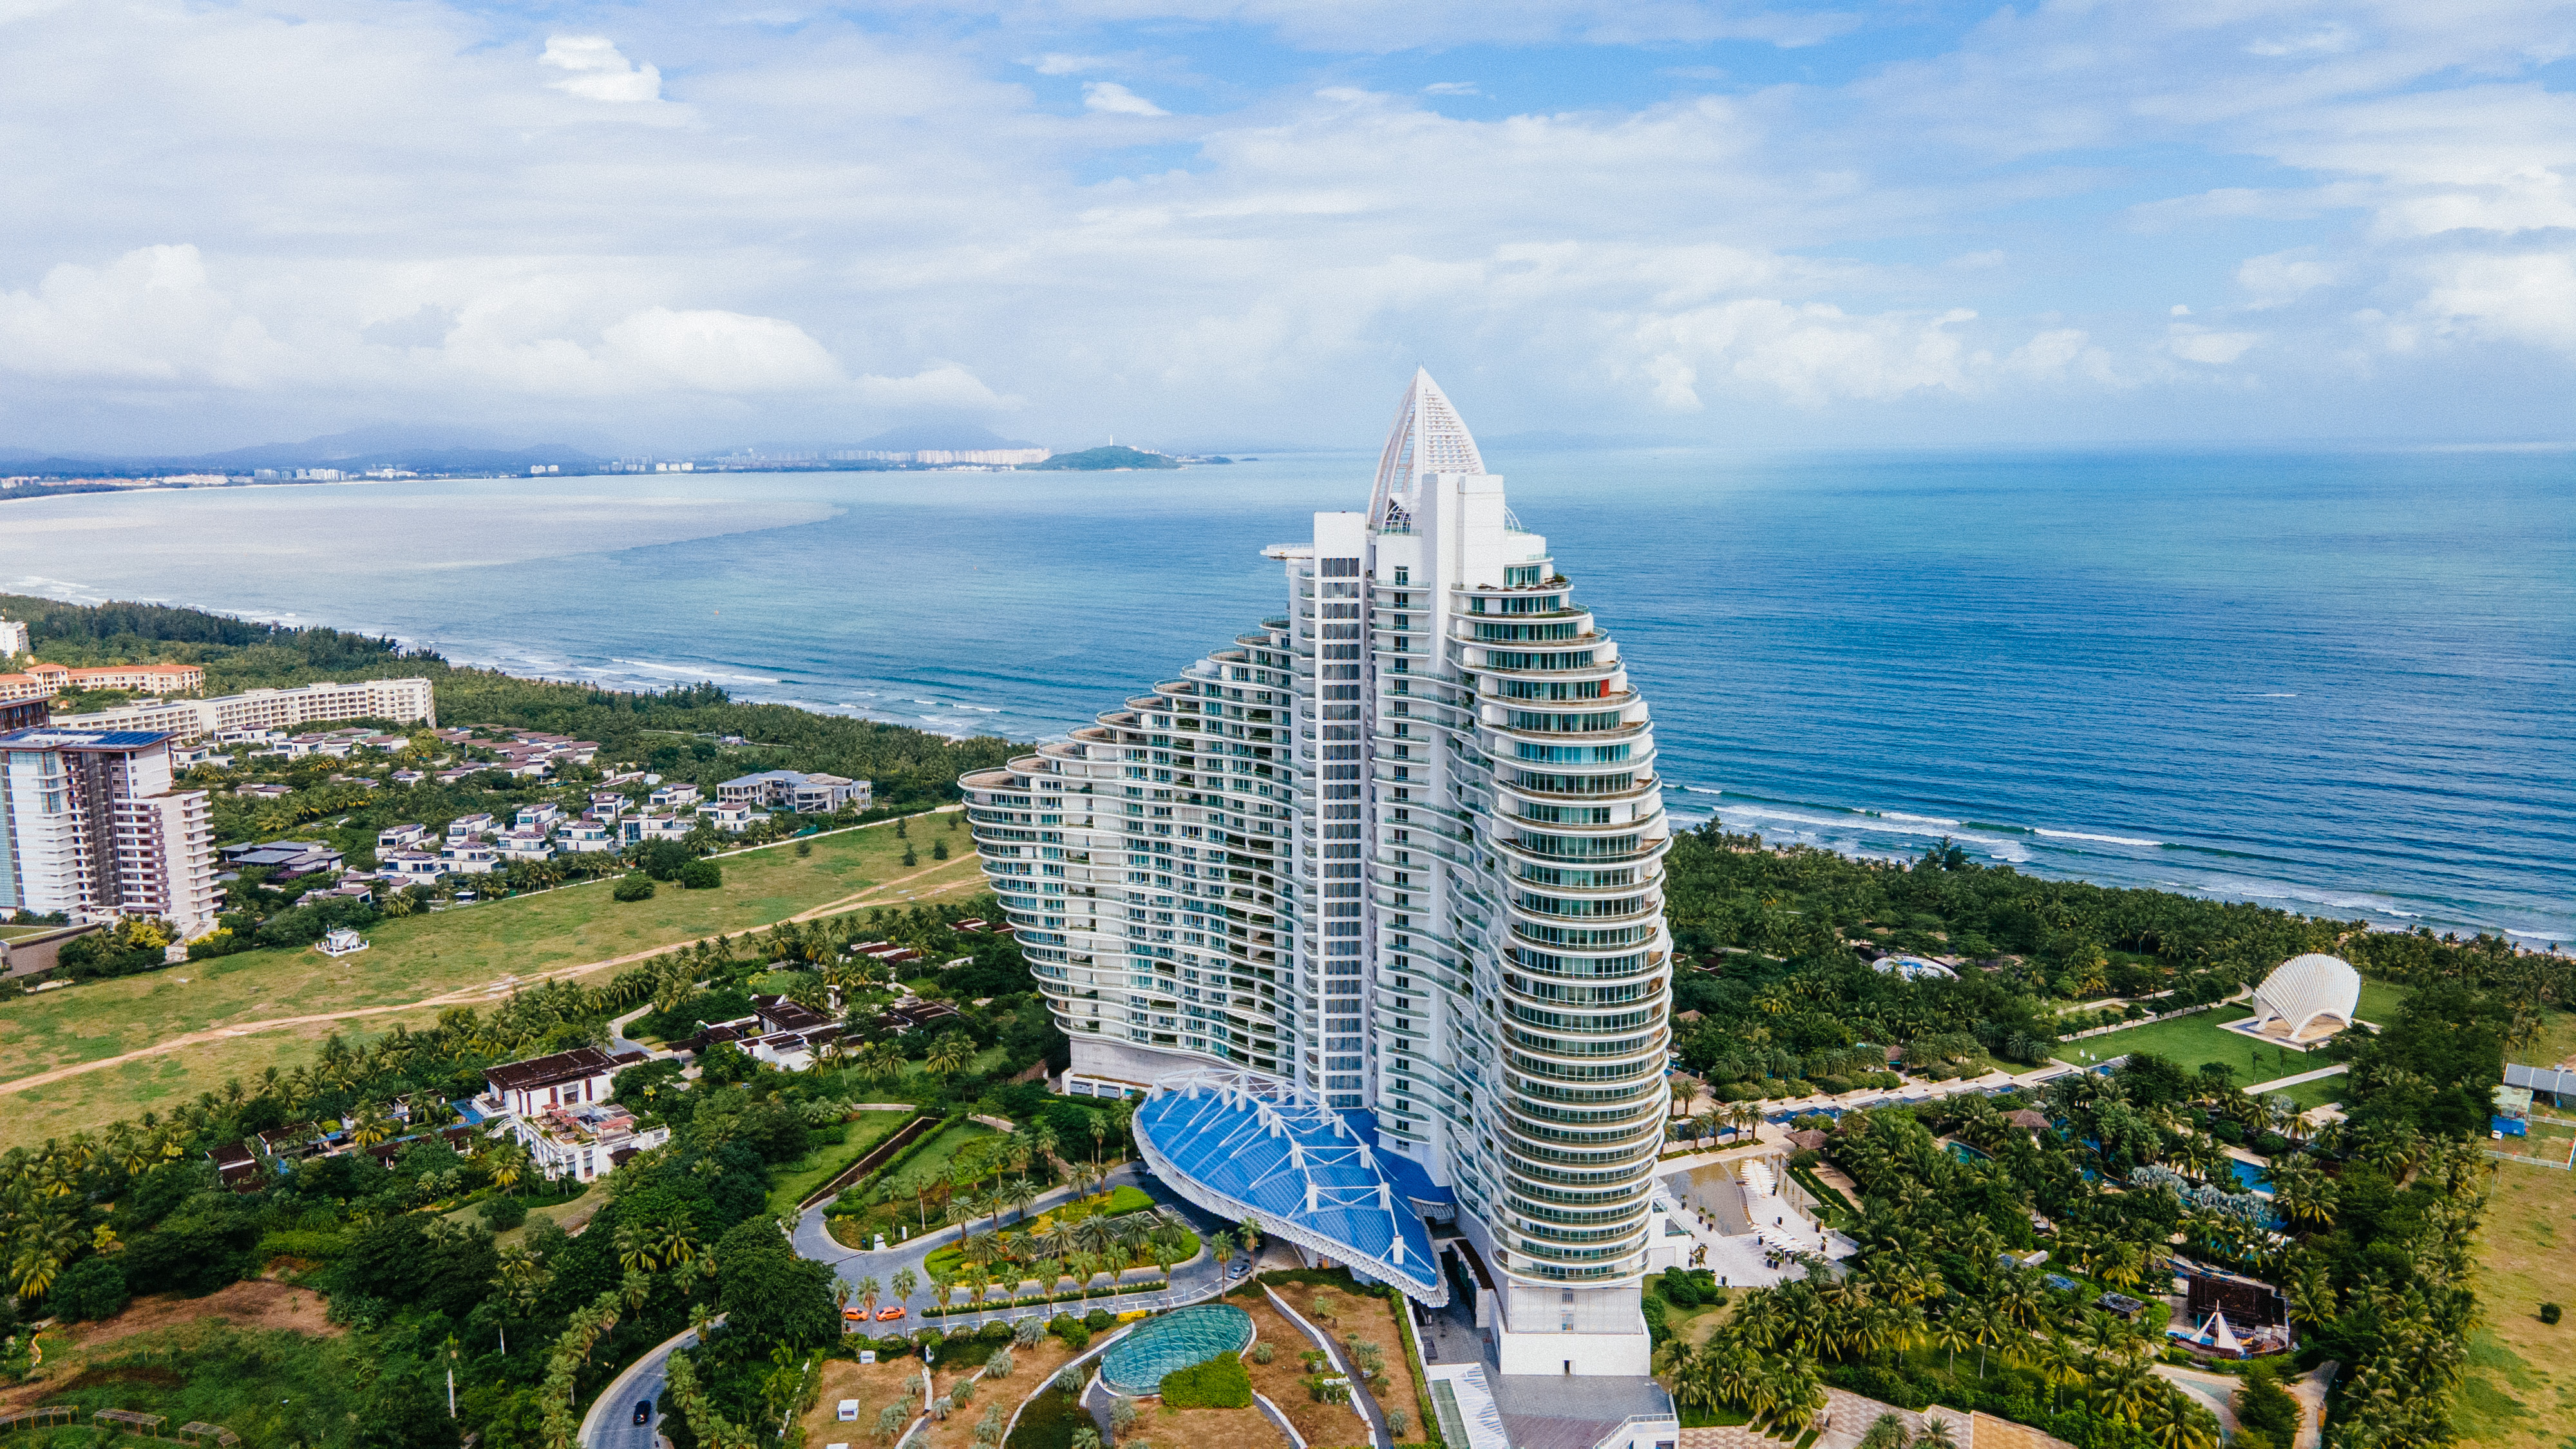 旋的海棠湾,建筑外型与迪拜帆船酒店一脉相承,被视为三亚新晋打卡之地